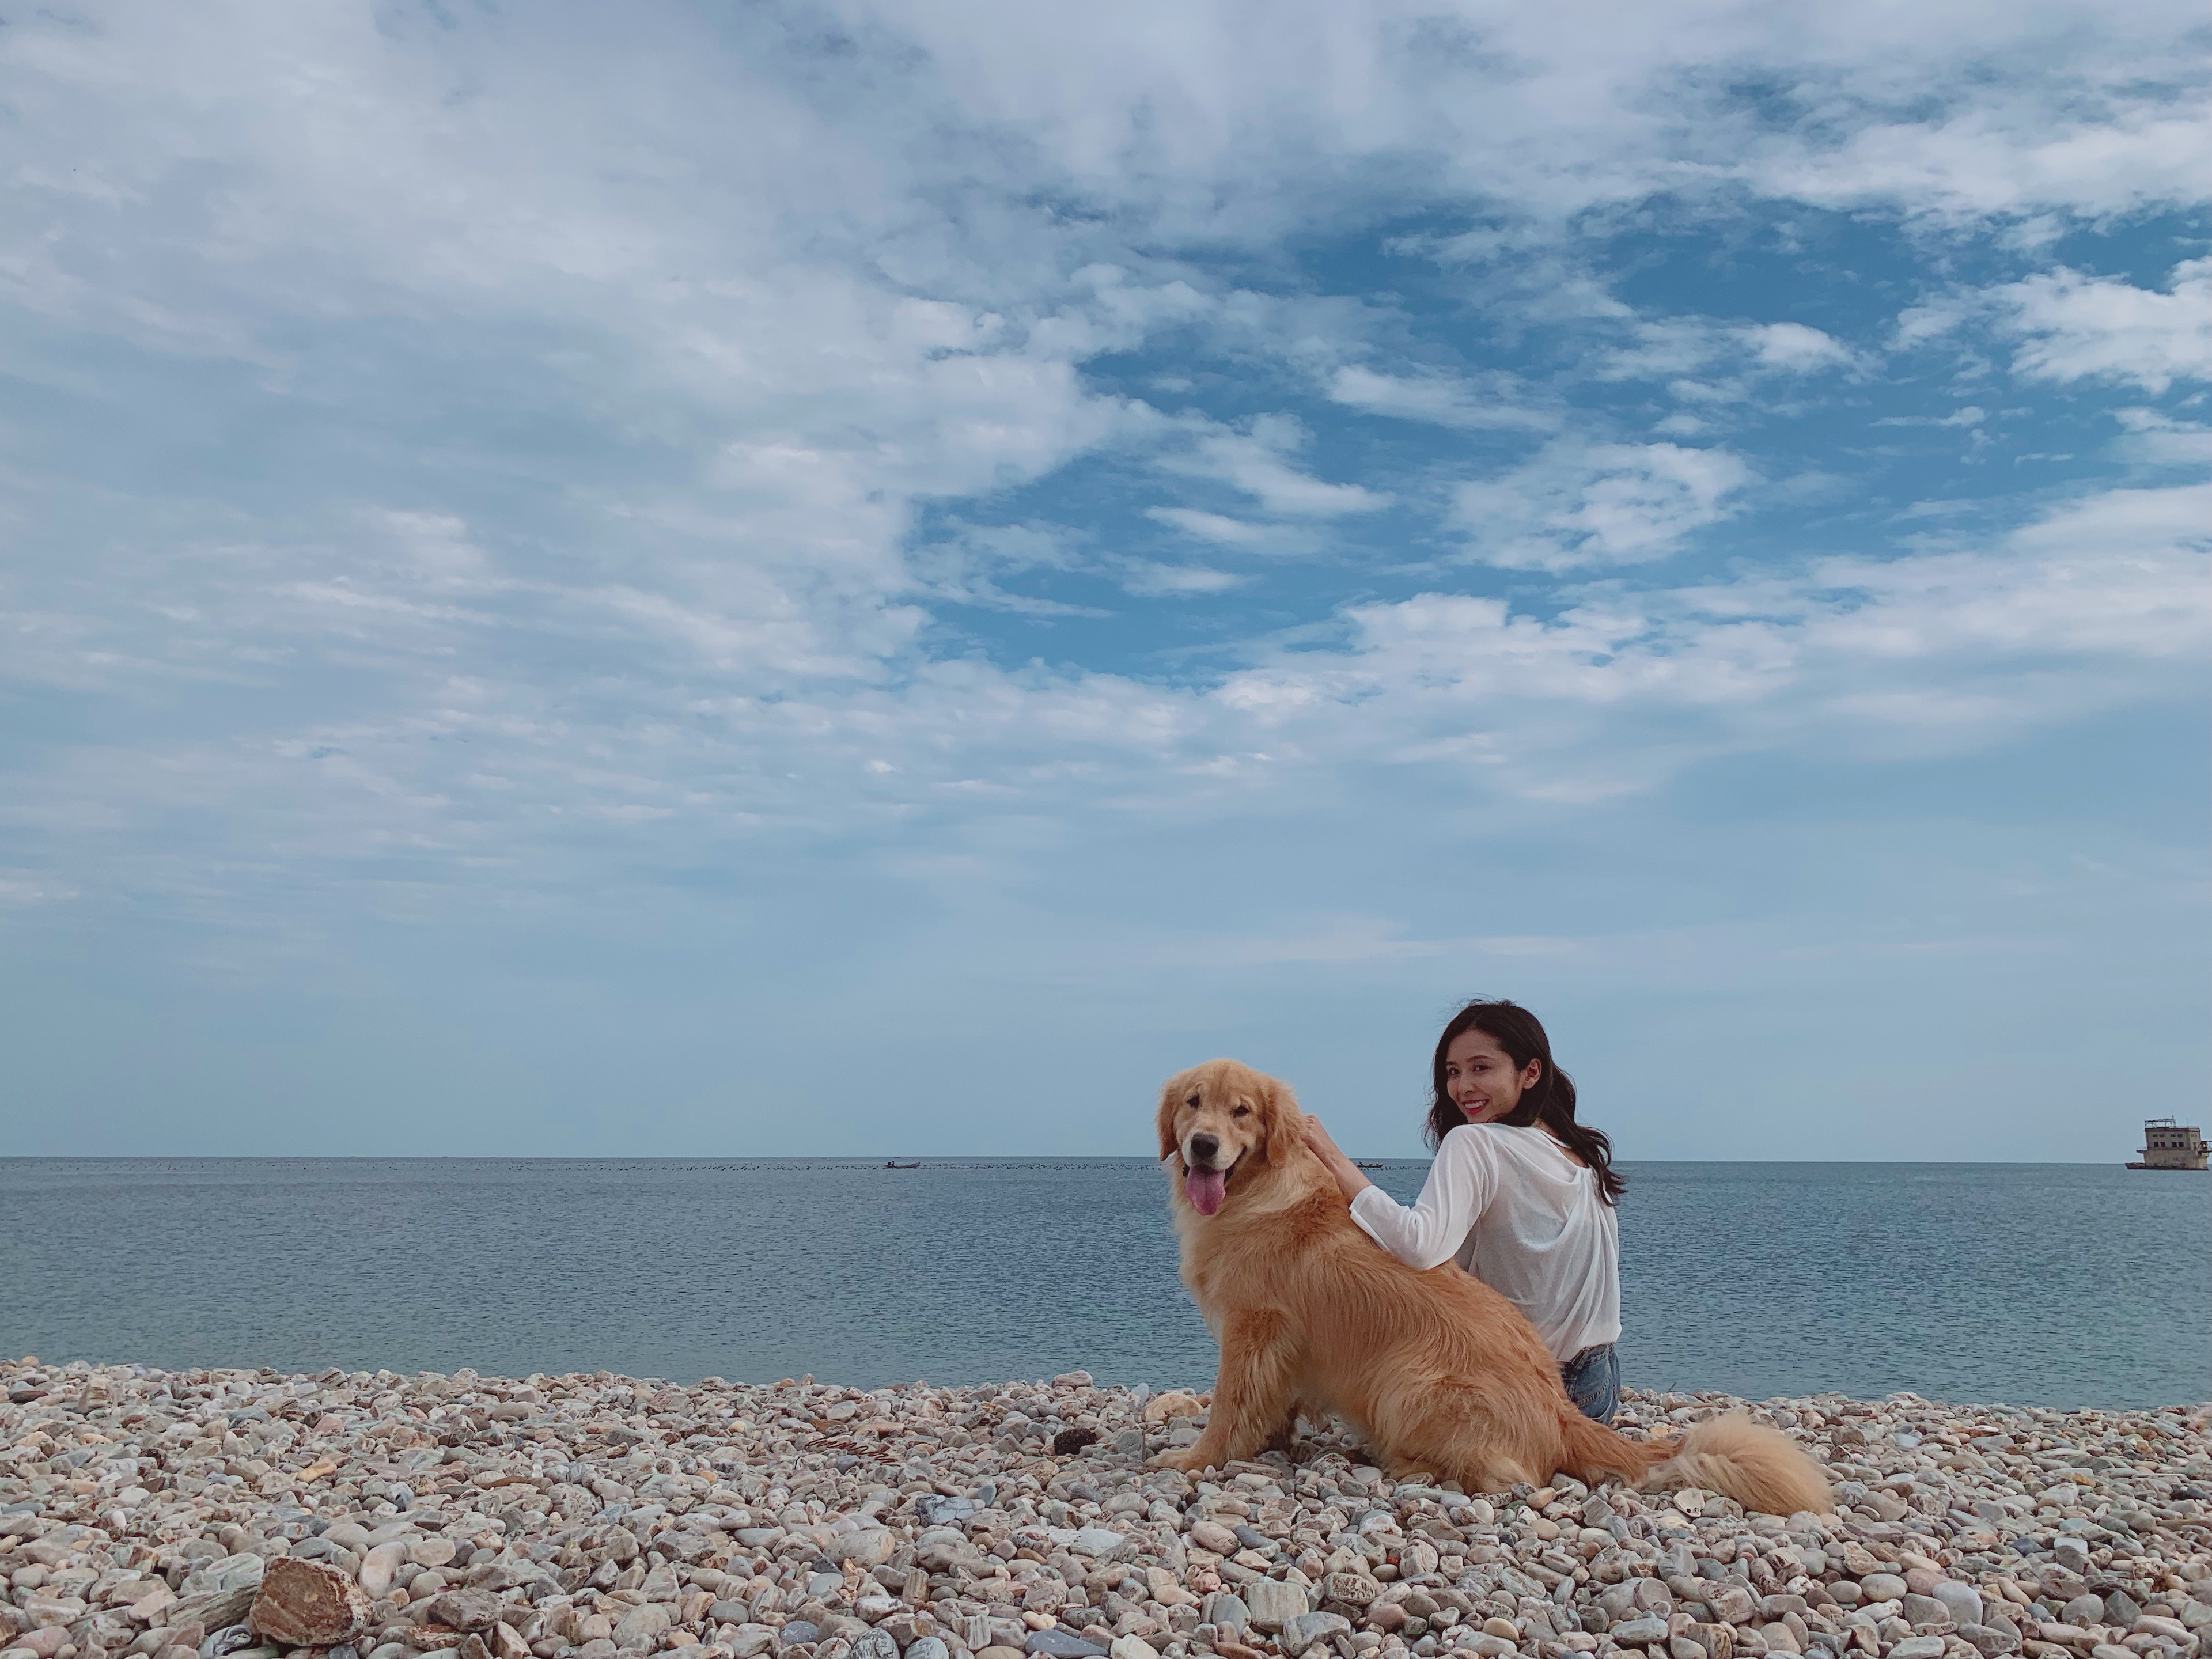 近日,剧中主演王蕾微博公布了一组与导盲犬奶油在海边玩耍的照片